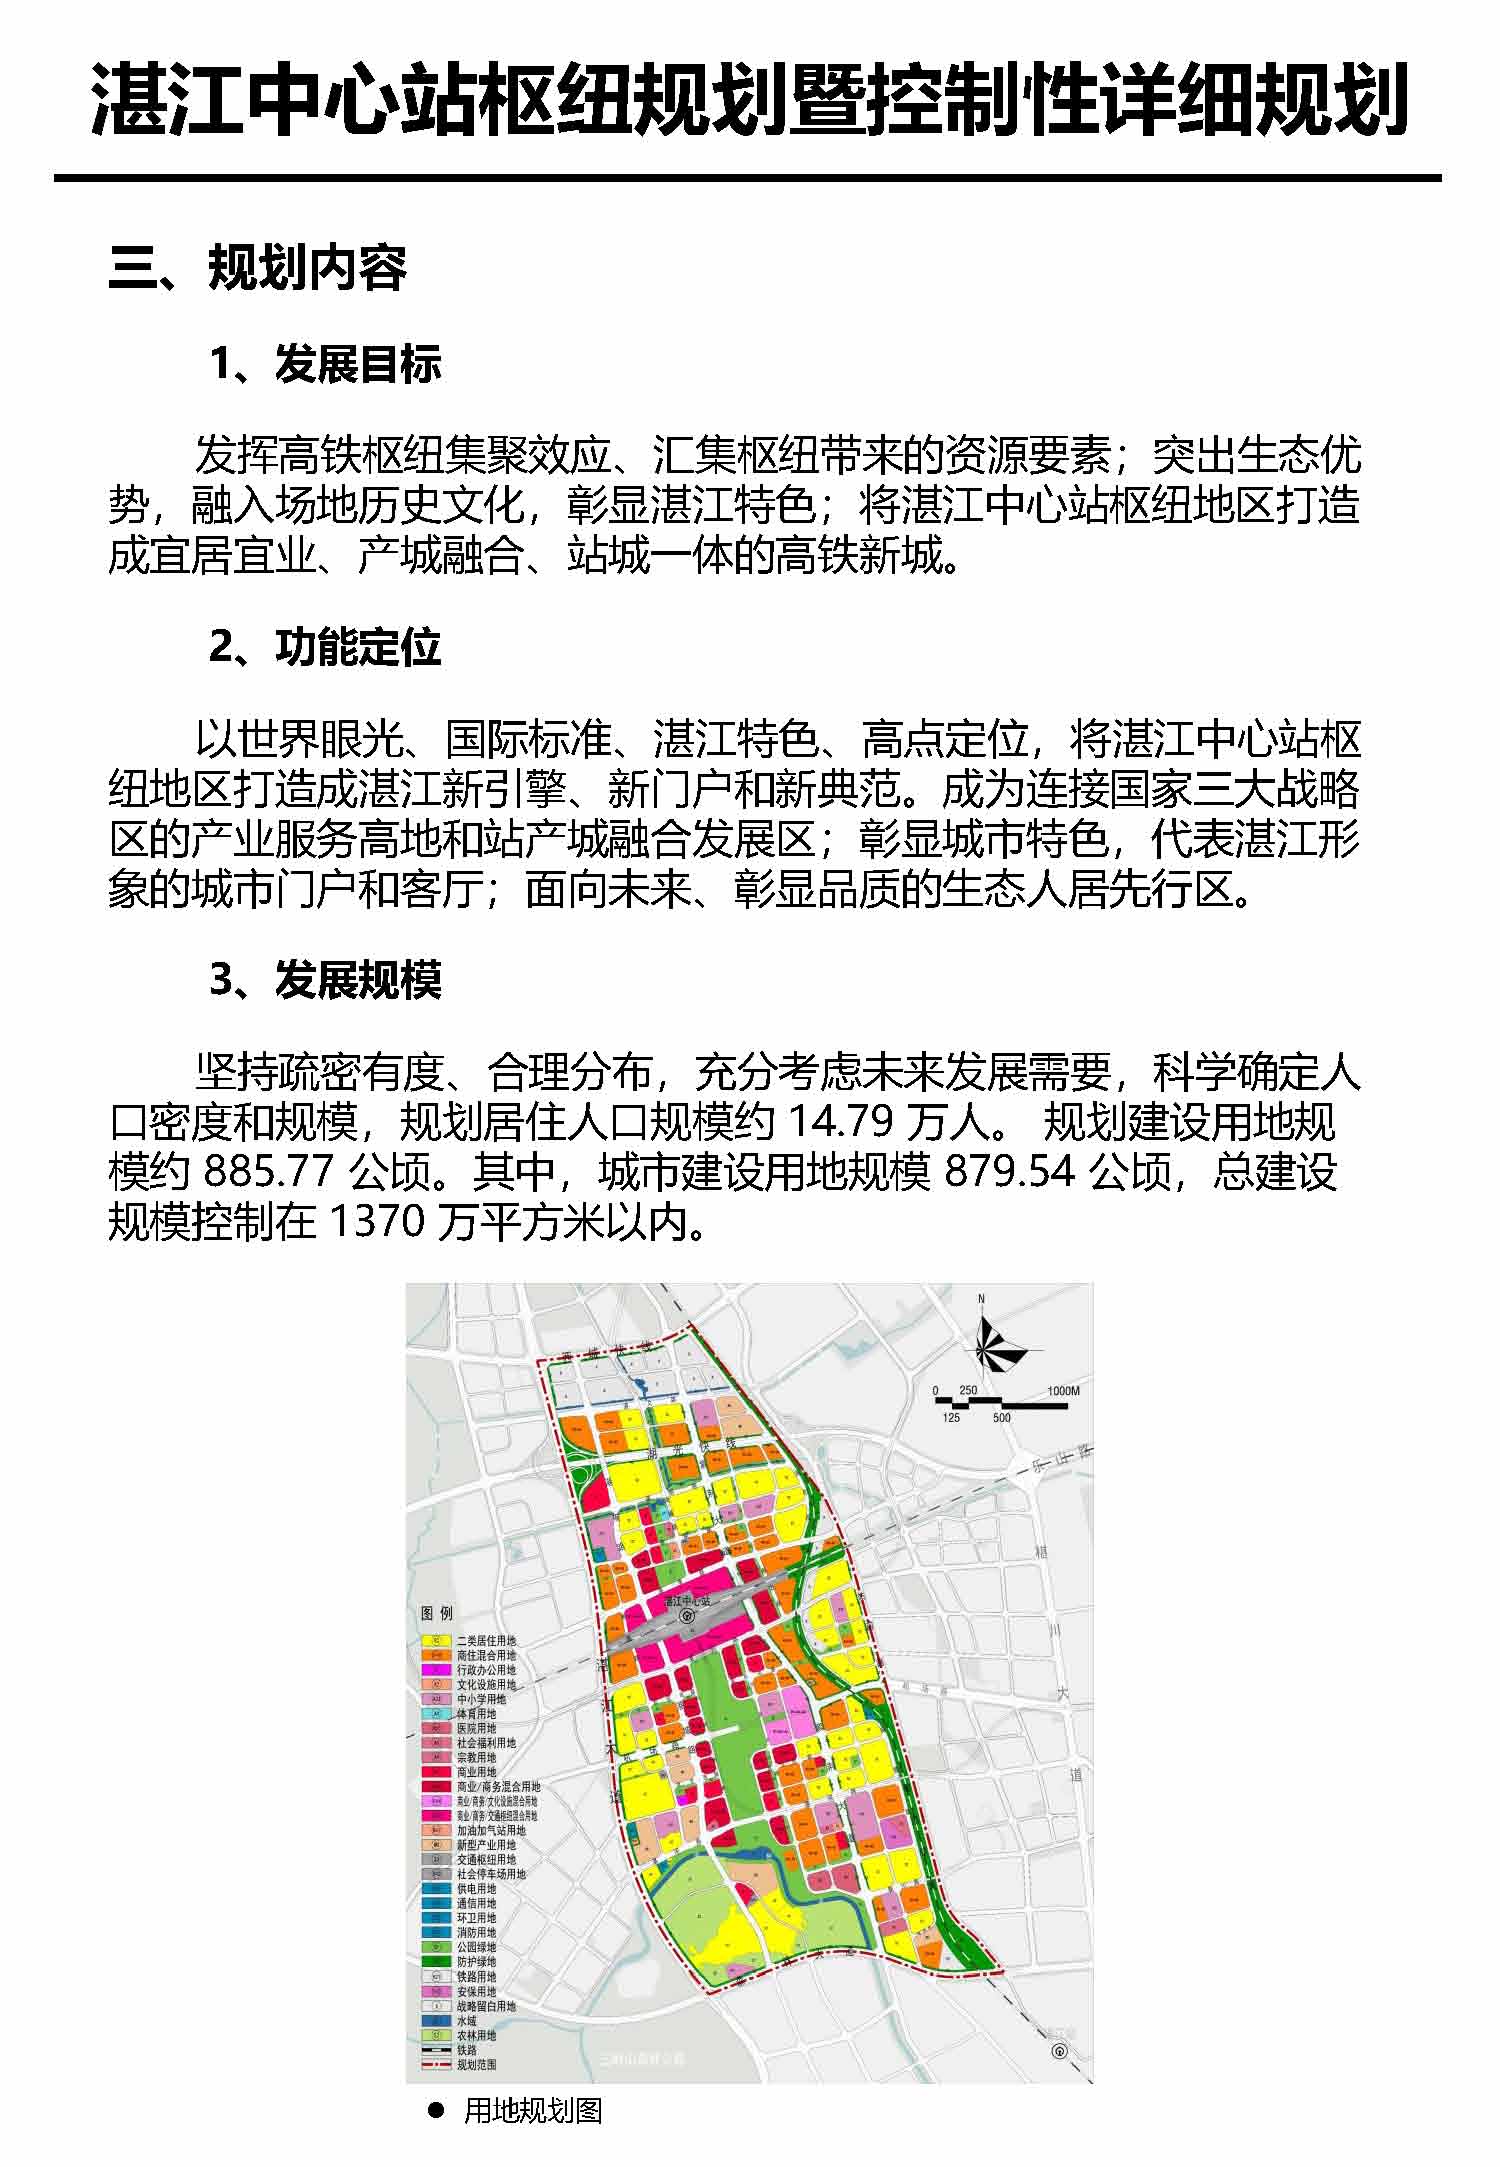 湛江市中心枢纽地区规划暨控制线详细规划报批后公告_页面_5.jpg